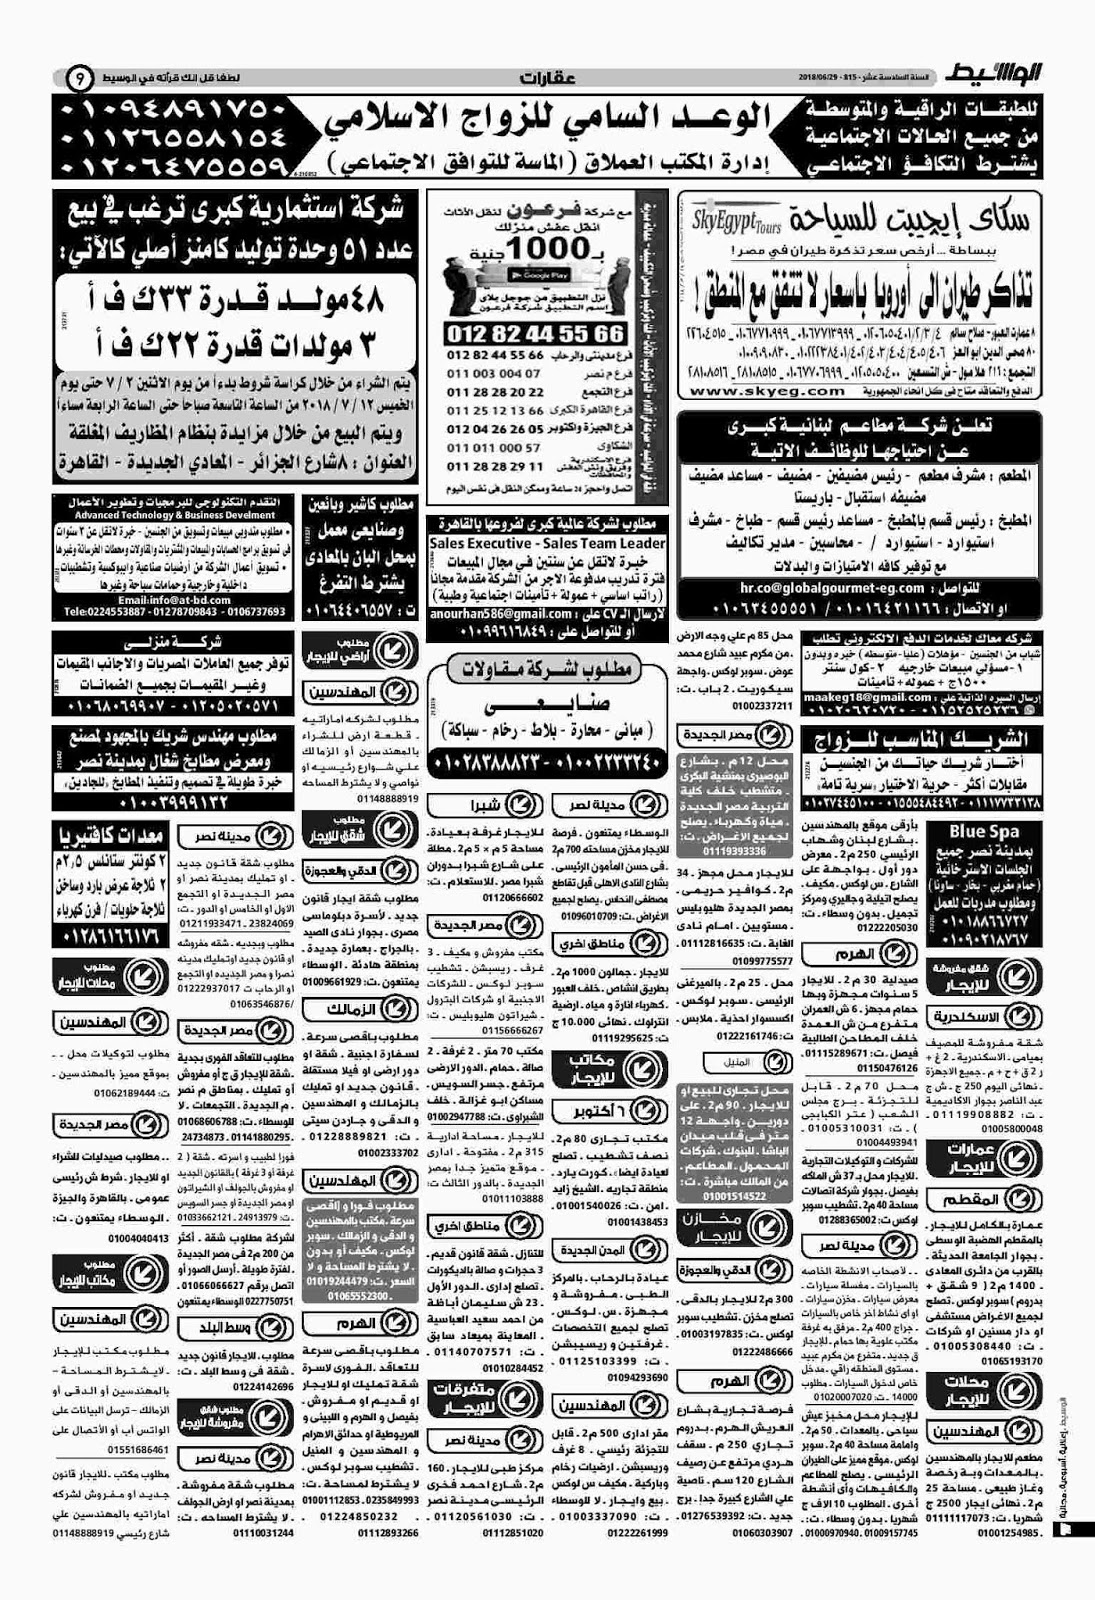 وظائف الوسيط مصر الجمعة 29 يونيو 2018 واعلانات الوسيط